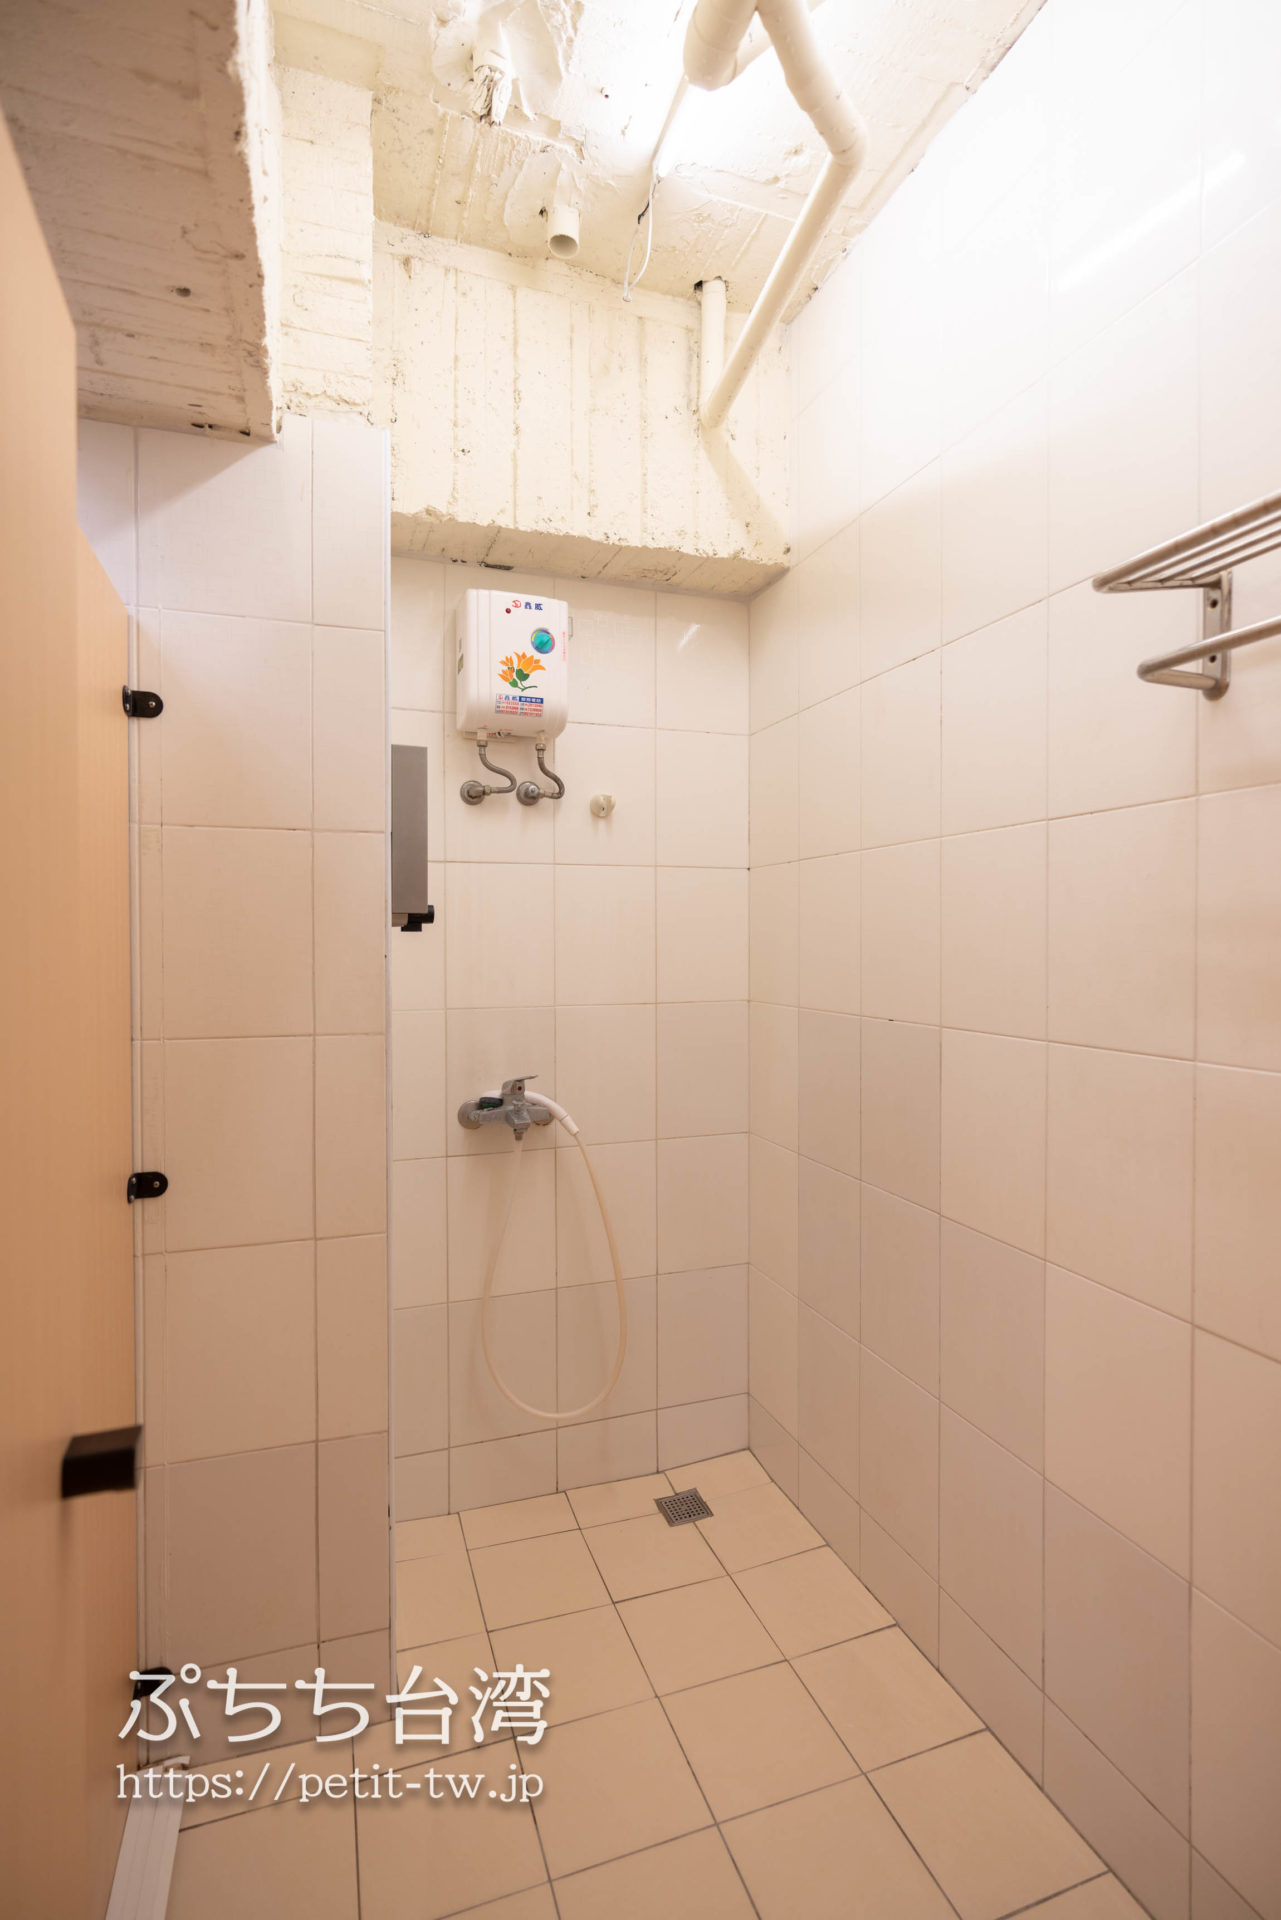 トリップGGホステル高雄（旅聚居青年旅舎）の共用バスルームのシャワー室